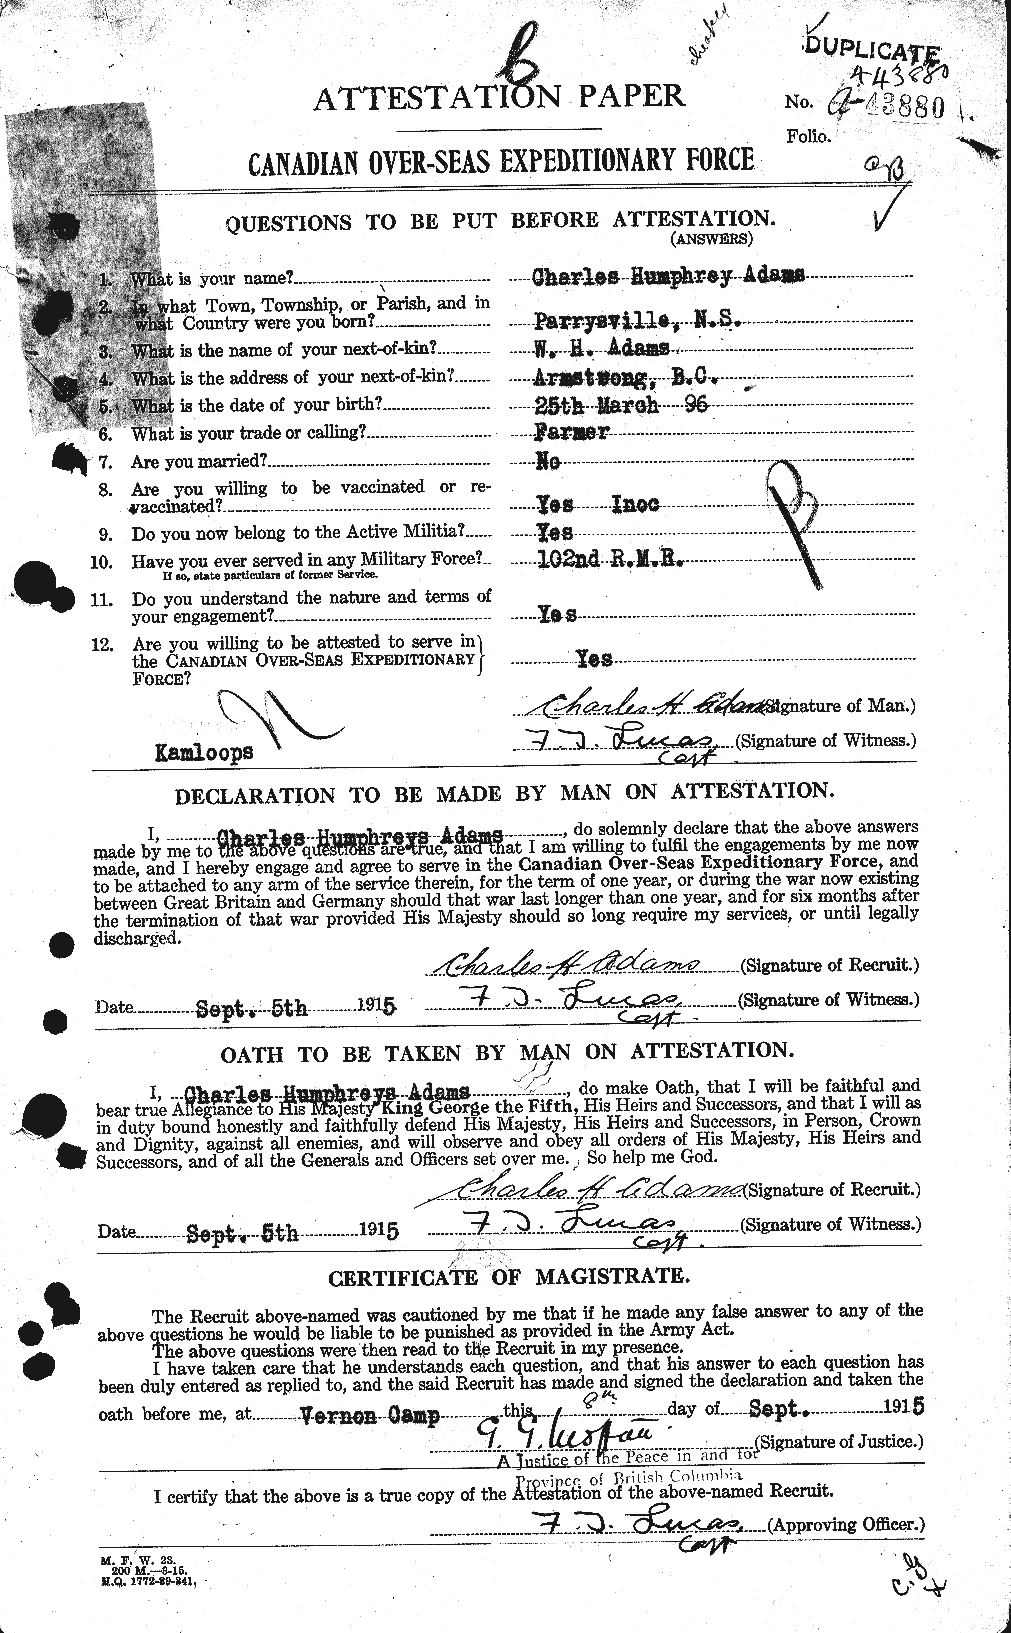 Dossiers du Personnel de la Première Guerre mondiale - CEC 202570a